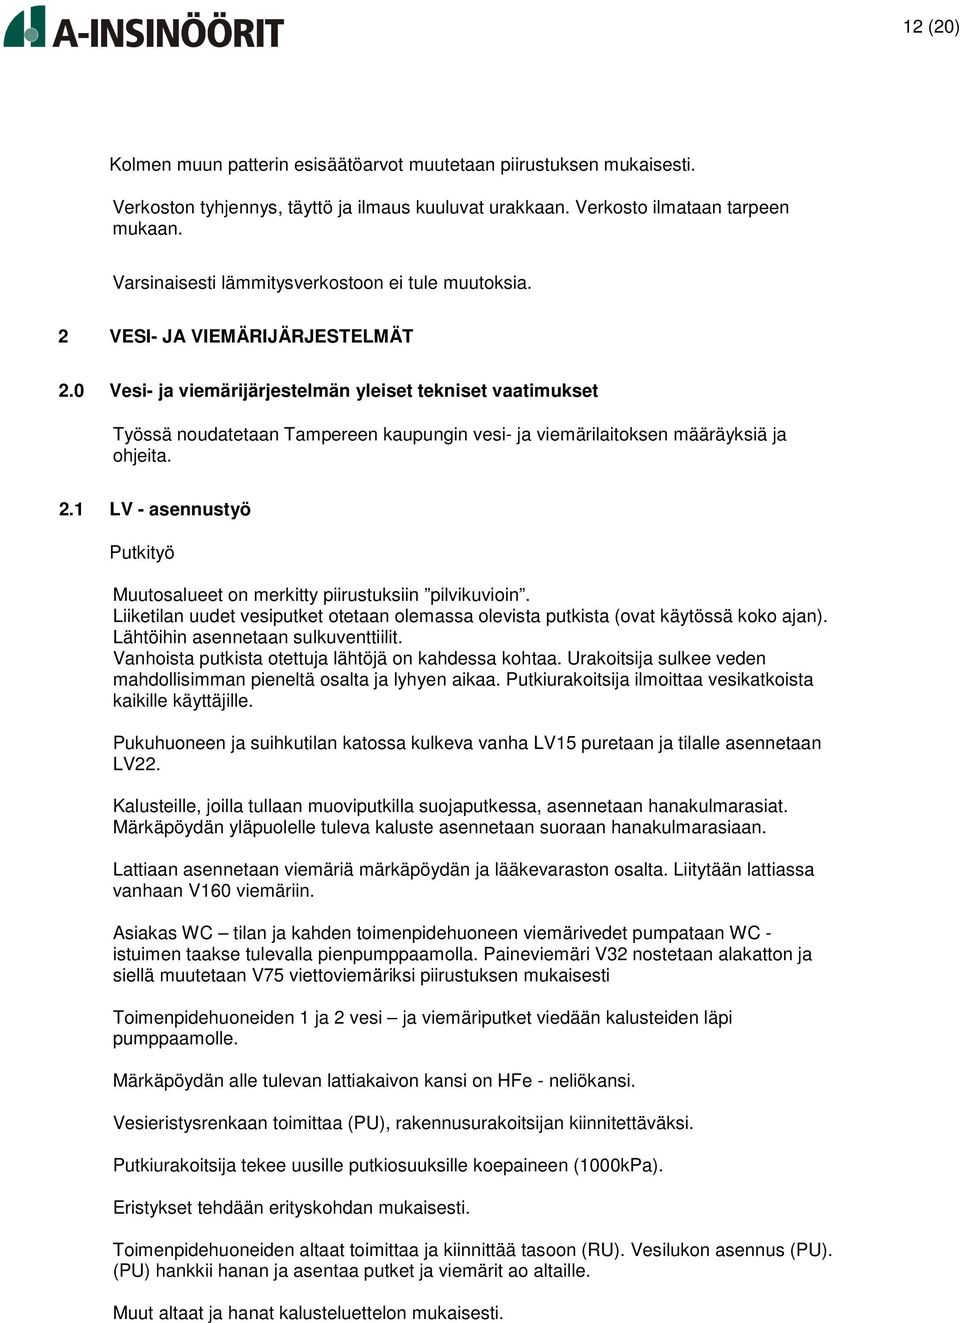 0 Vesi- ja viemärijärjestelmän yleiset tekniset vaatimukset Työssä noudatetaan Tampereen kaupungin vesi- ja viemärilaitoksen määräyksiä ja ohjeita. 2.